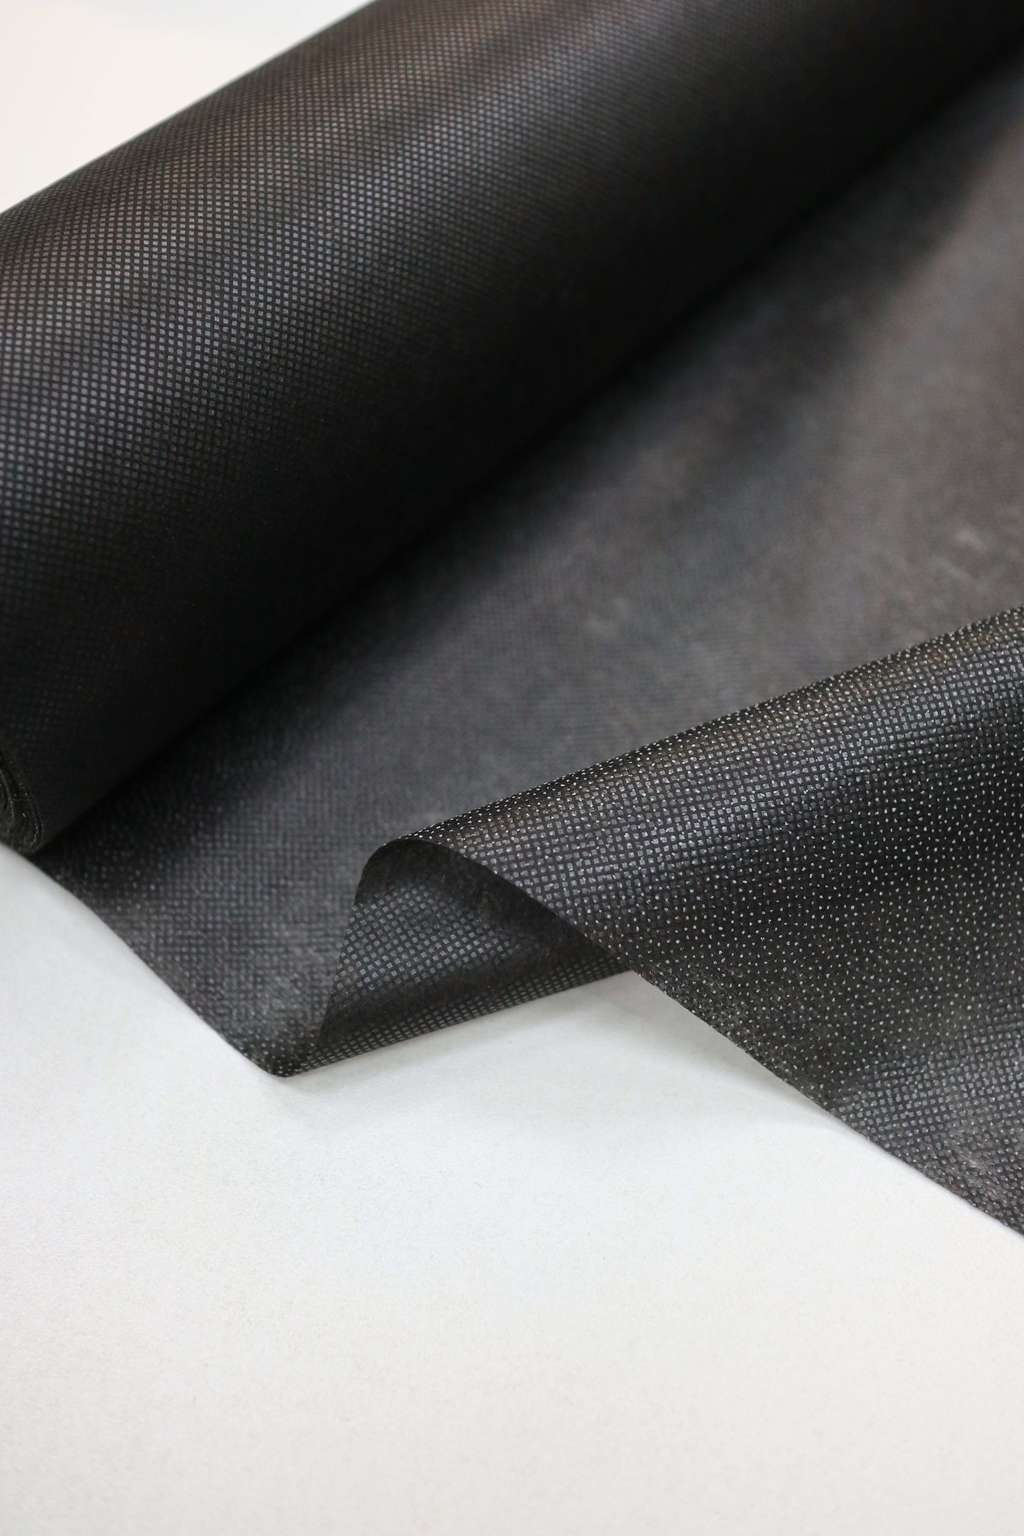 Нетканный материал (флизелин) "Гамма" клеевой сплошной   G-530c   40 г/кв.м ± 2   100 см  чёрный